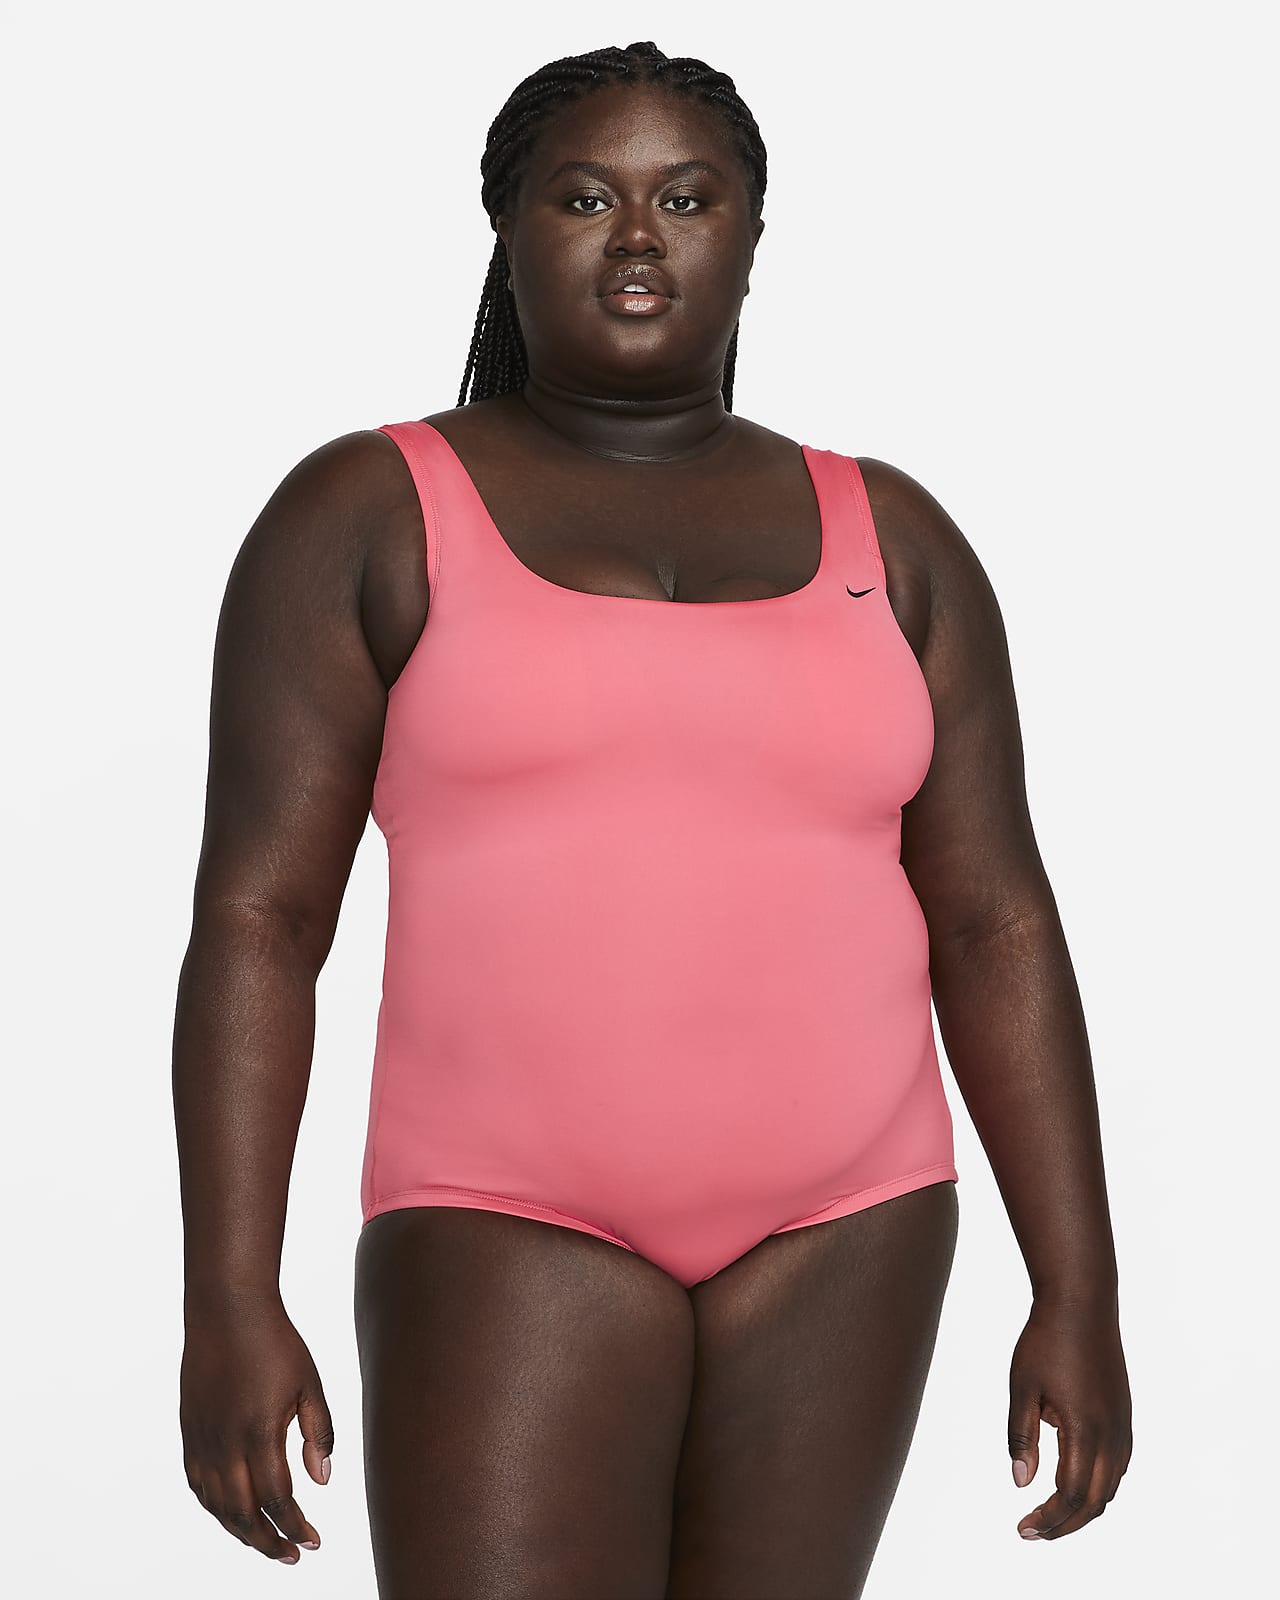 Saturar El cuarto Portero Nike Essential Women's U-Back One-Piece Swimsuit (Plus Size). Nike.com